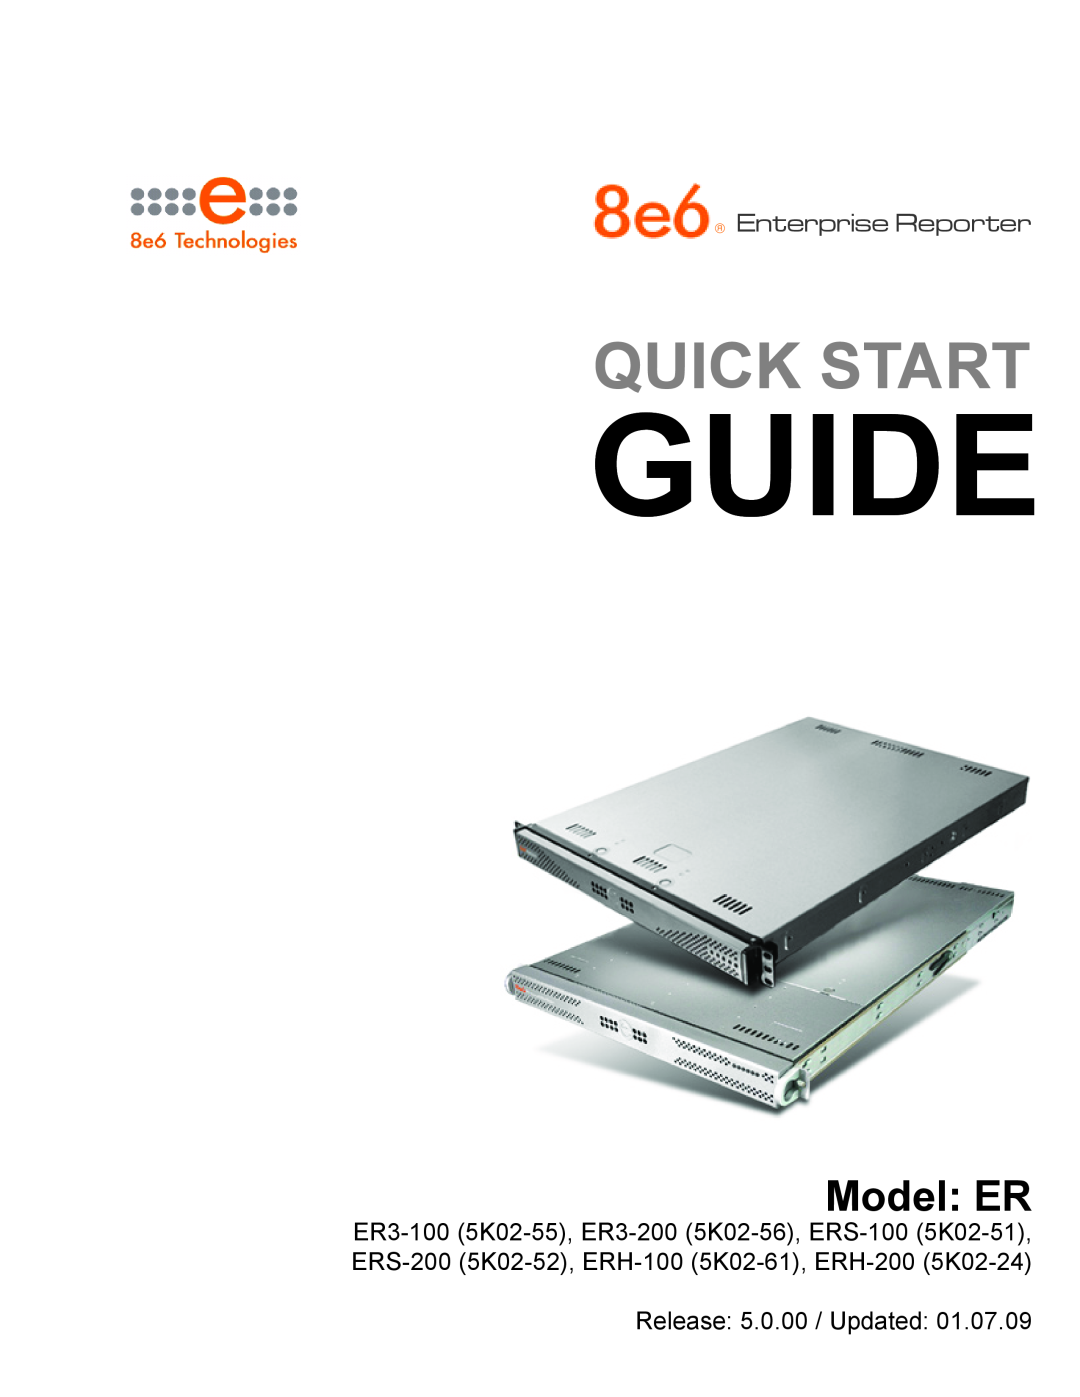 8e6 Technologies ER3-200 (5K02-56) quick start Guide, Quick Start, Model ER, Enterprise Reporter, Release 5.0.00 / Updated 